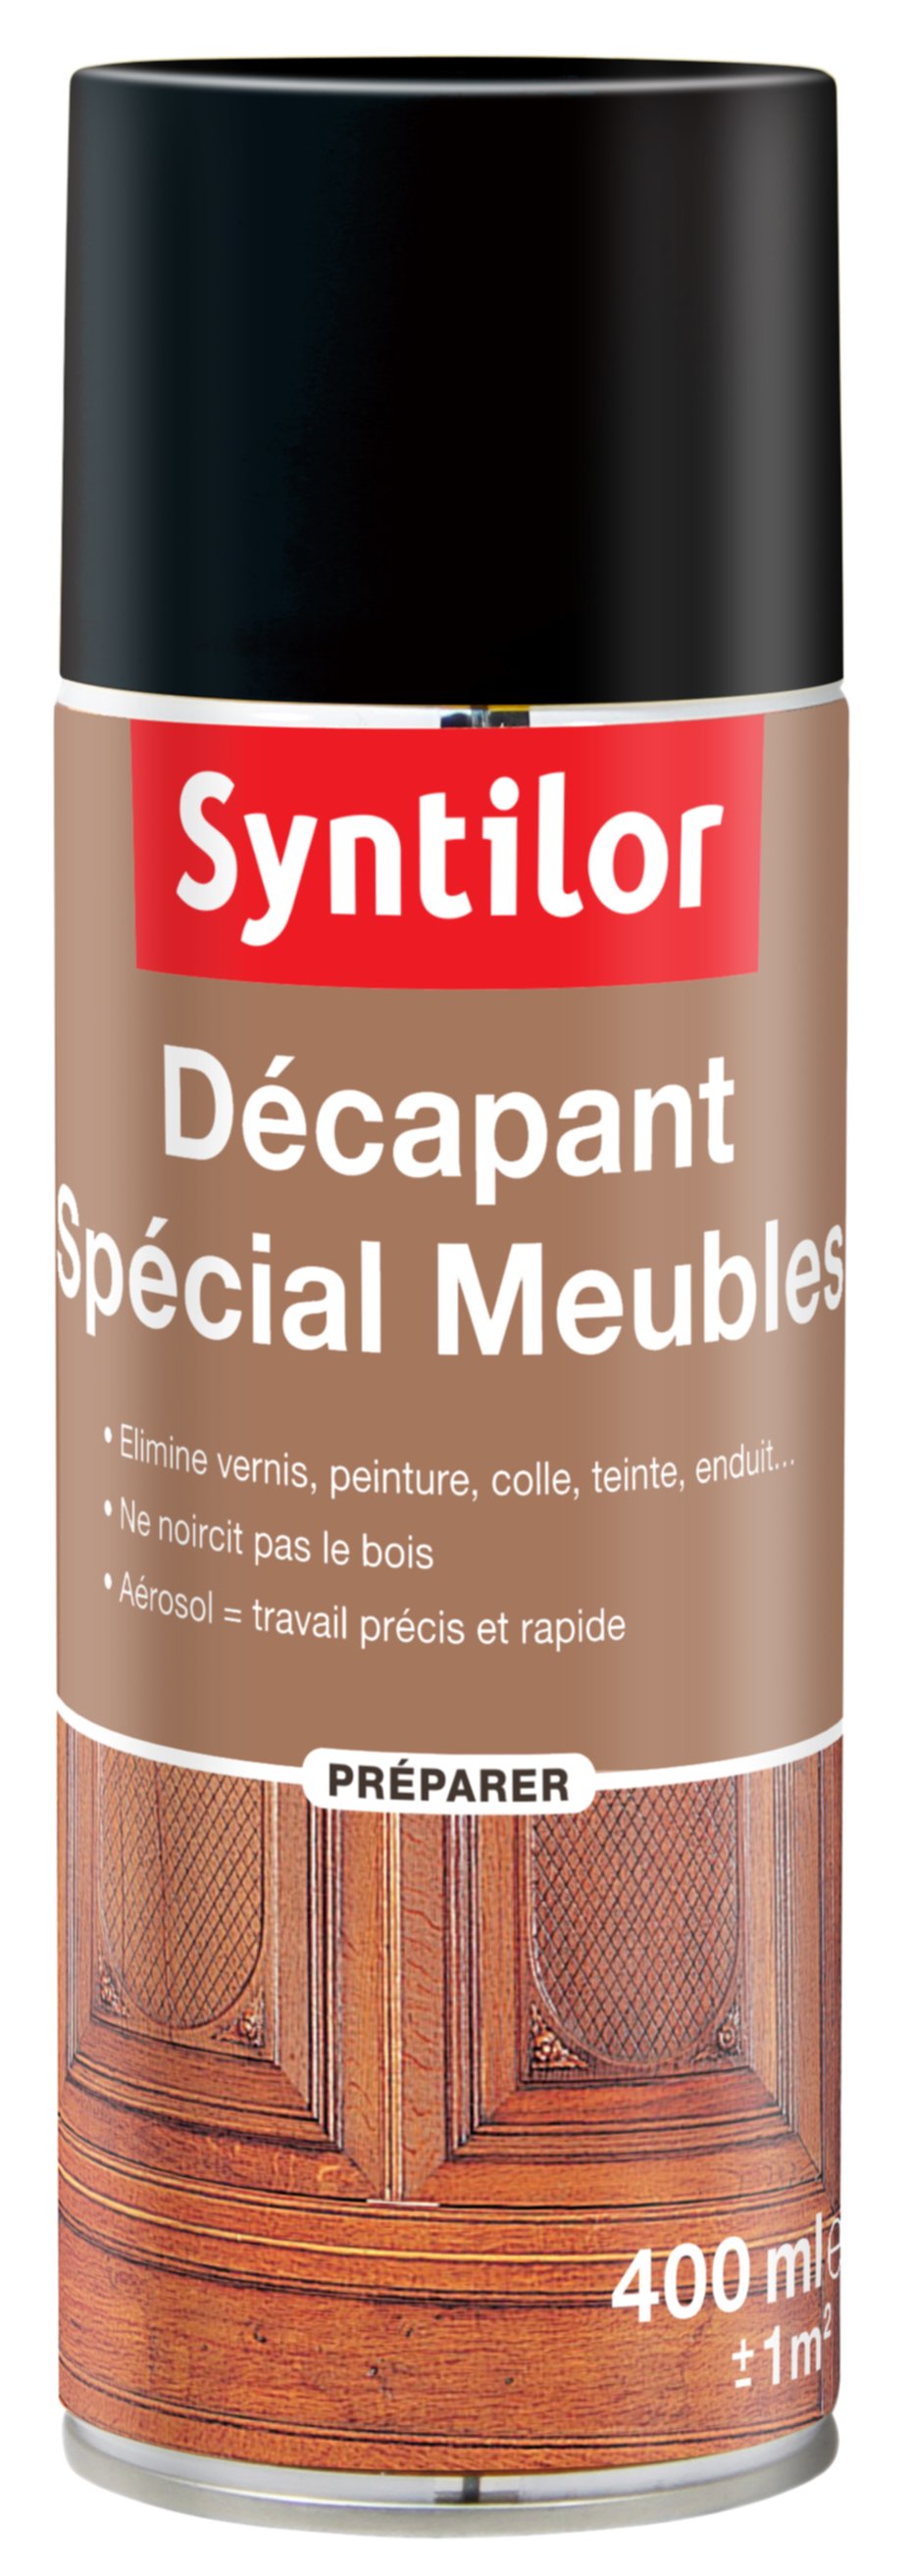 Décapant Spécial Meubles aérosol 400 ml Syntilor